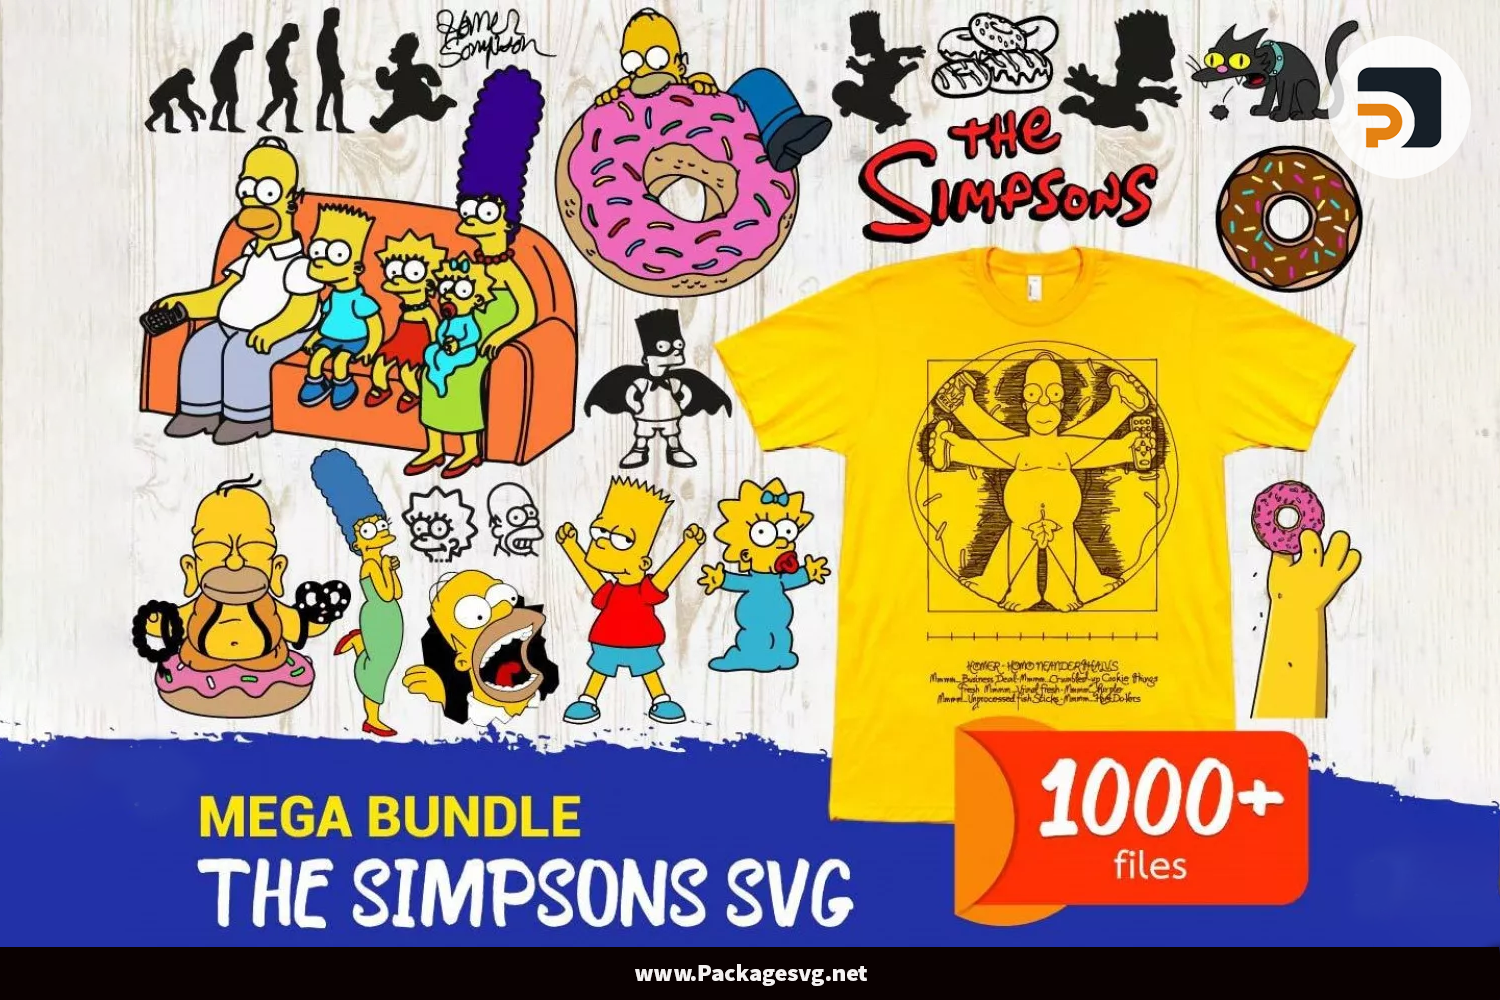 The Simpsons SVG Mega Bundle